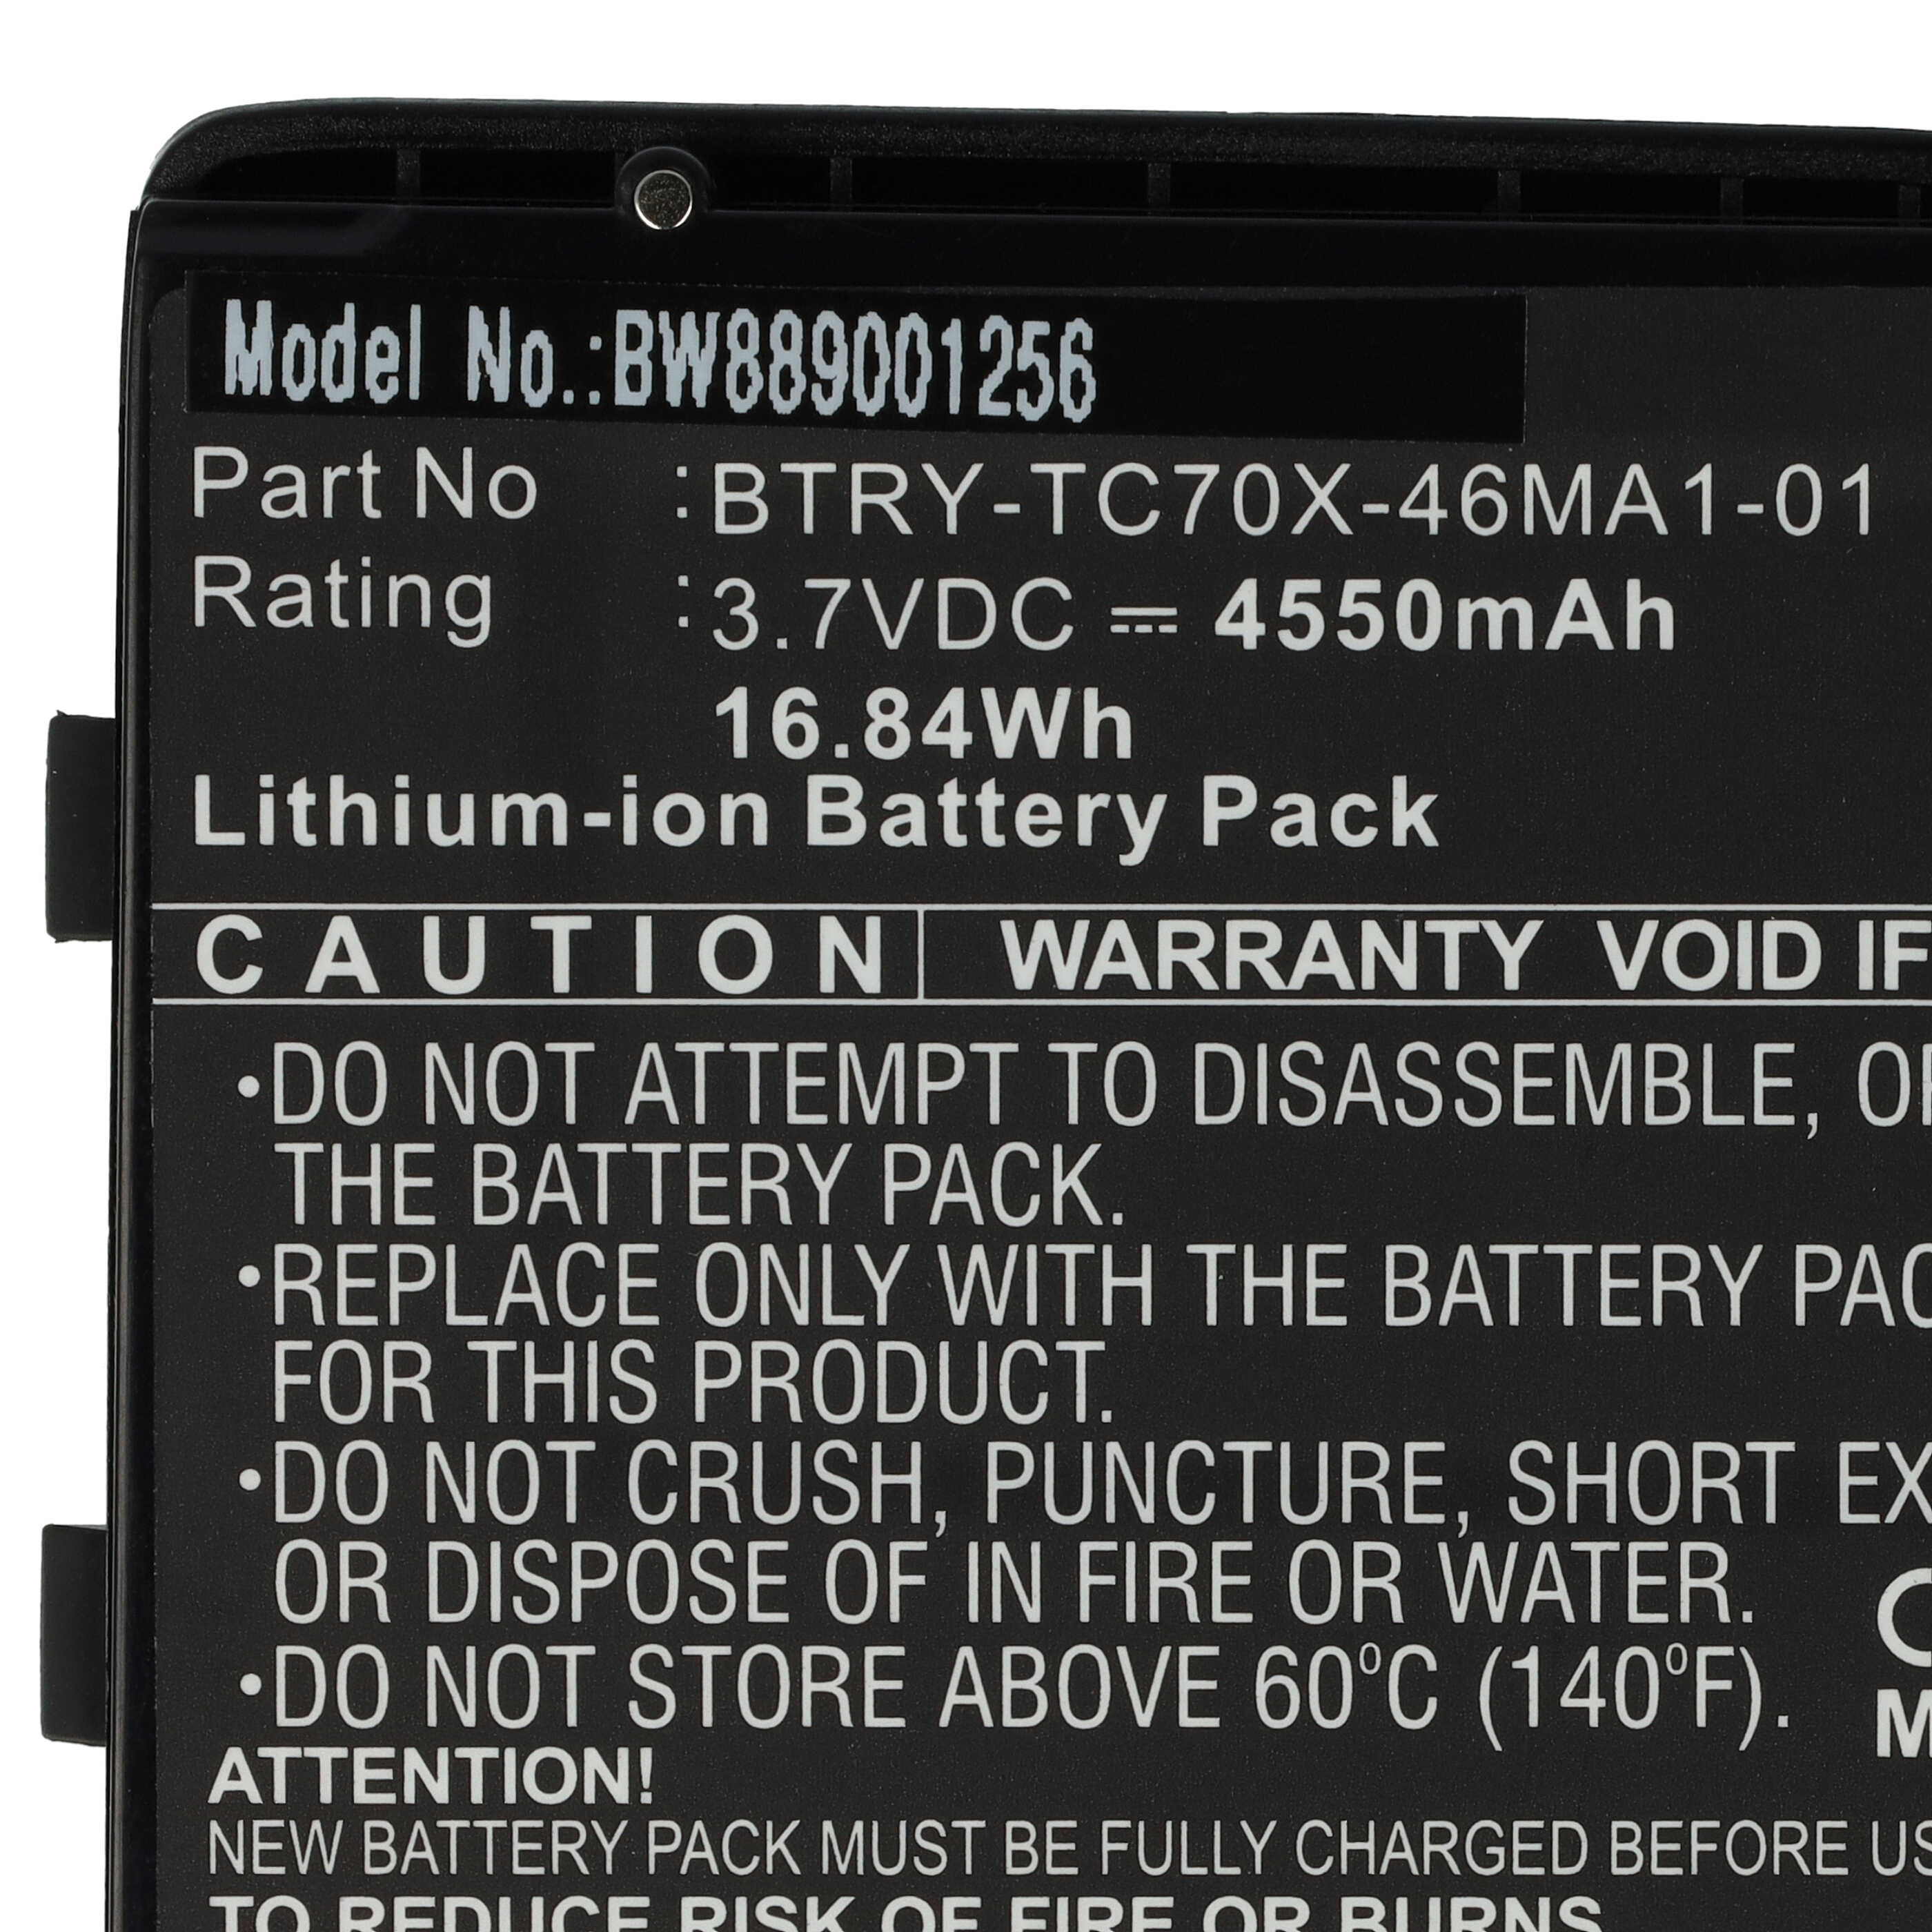 Batterie remplace Motorola 82-171249-01, 82-171249-02 pour scanner de code-barre - 4550mAh 3,7V Li-ion